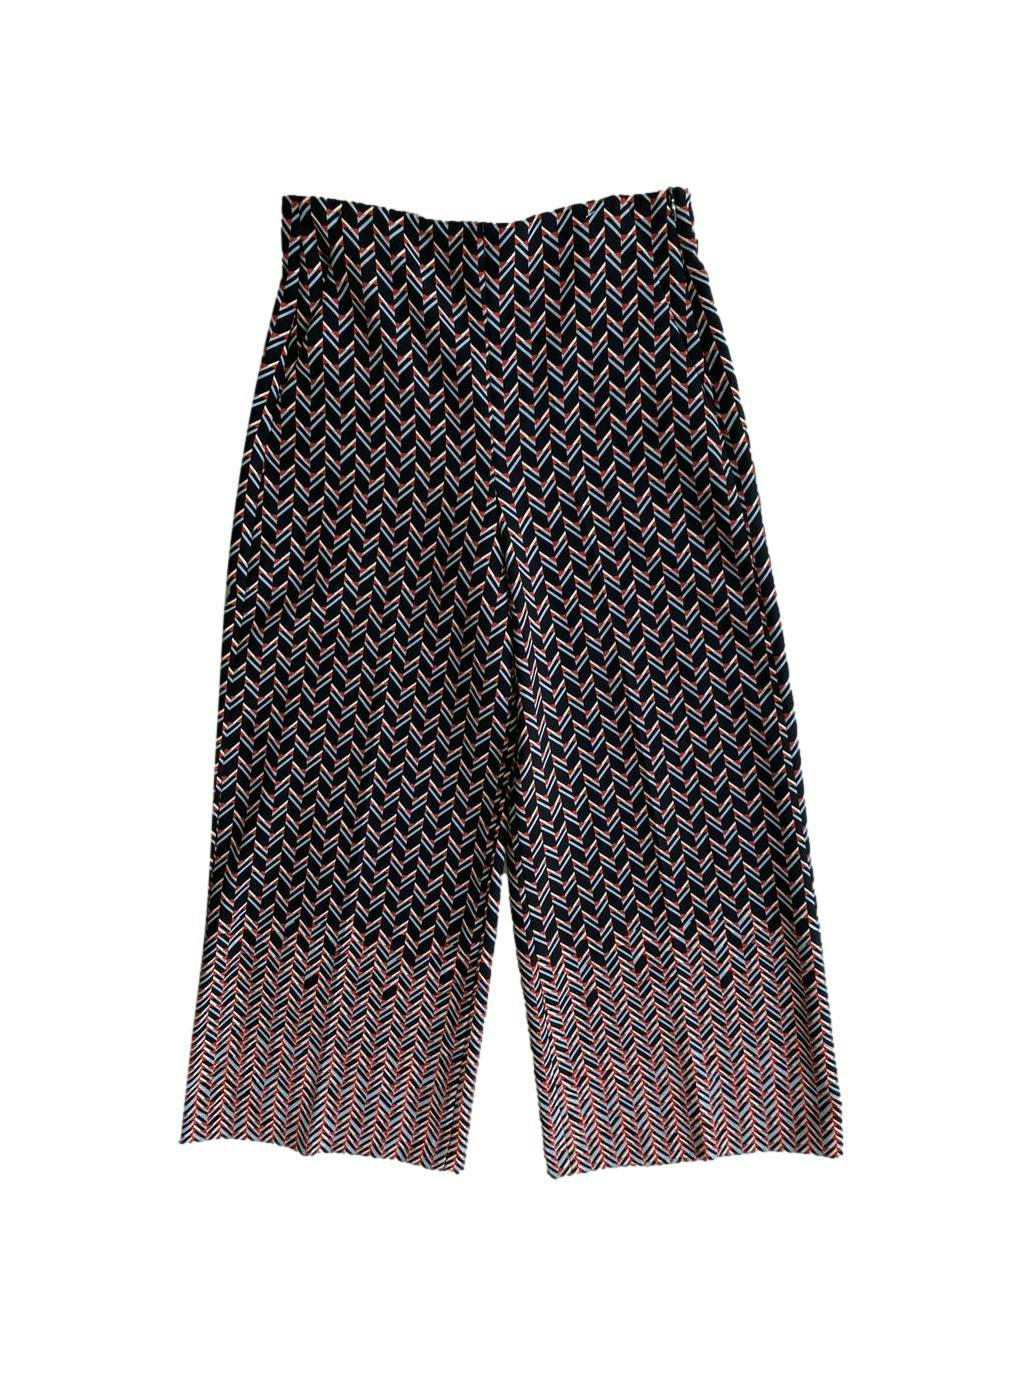 Pantalón palazo Zara, estampado geométrico en tonos naranja, negro y gris, cierre lateral invisible y bolsillos. Cintura: 66 cm, Tiro: 30 cm, Largo: 90 cm